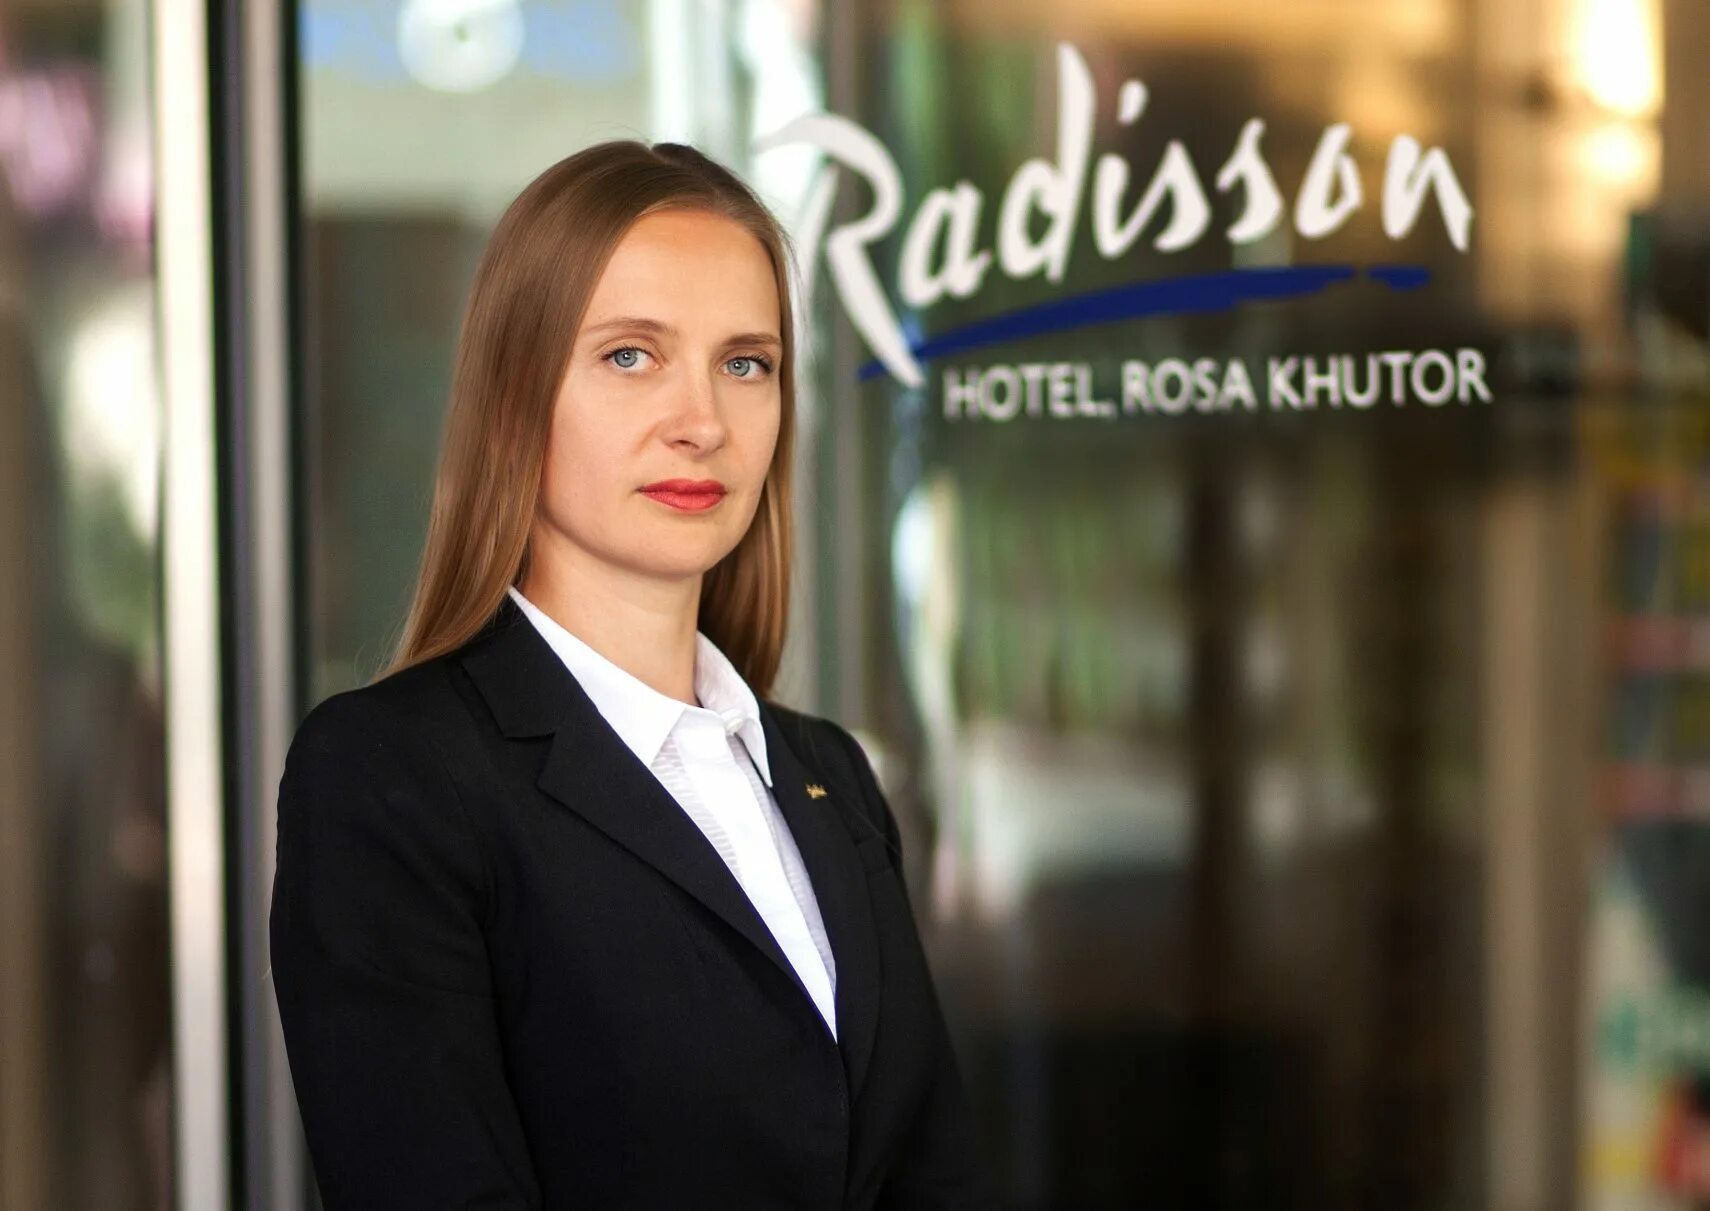 Админ сочи. Генеральный директор Рэдиссон. Рэдиссон Украина отель управляющий директор. Генеральный директор гостиницы Рэдиссон. Генеральный директор Radisson Sonya Hotel.